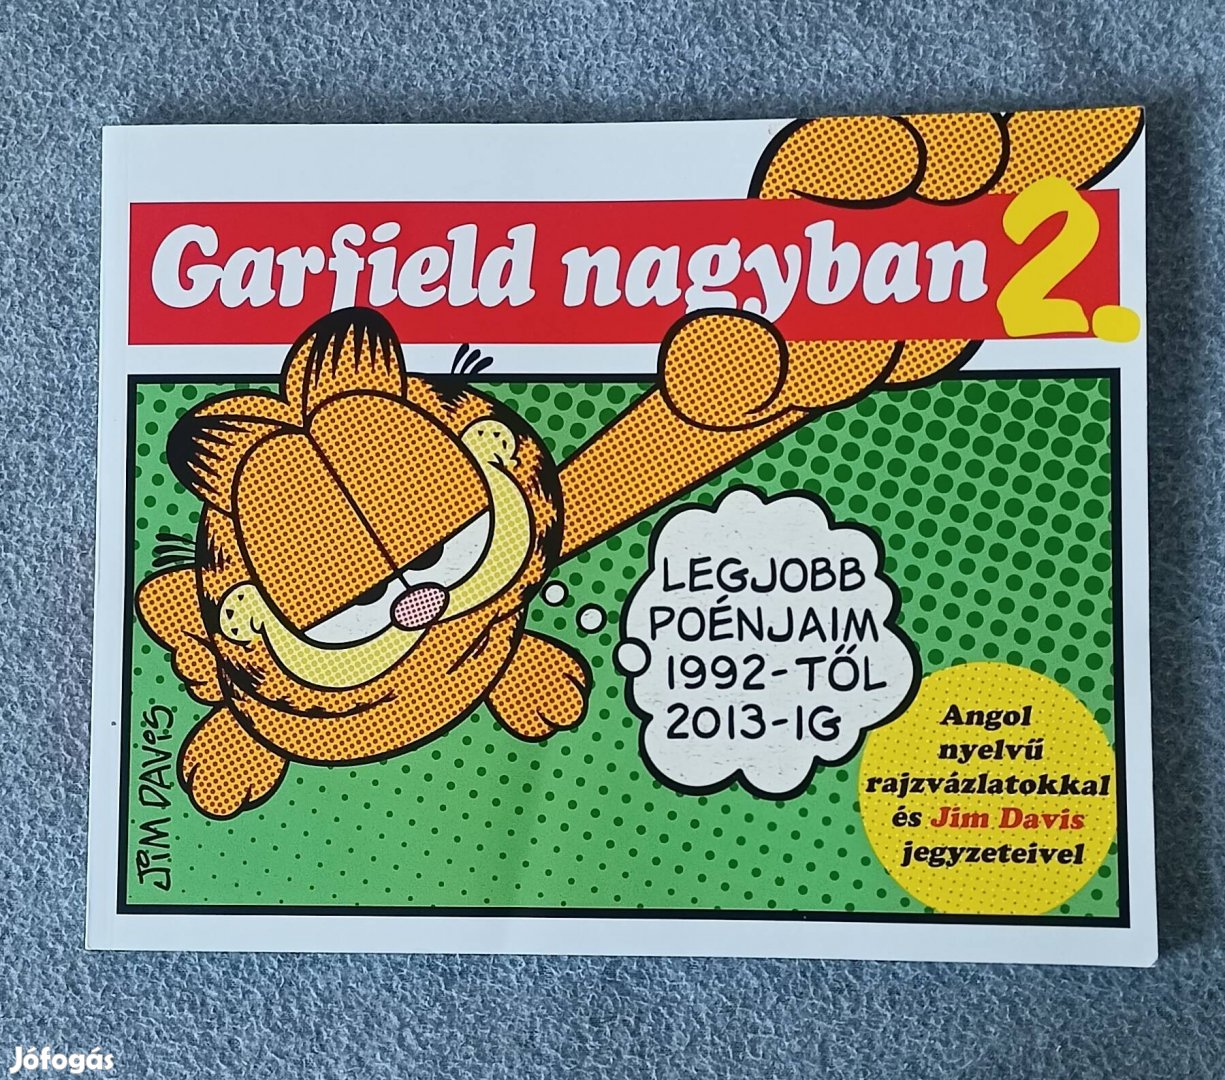 Garfield nagyban2 képregény 